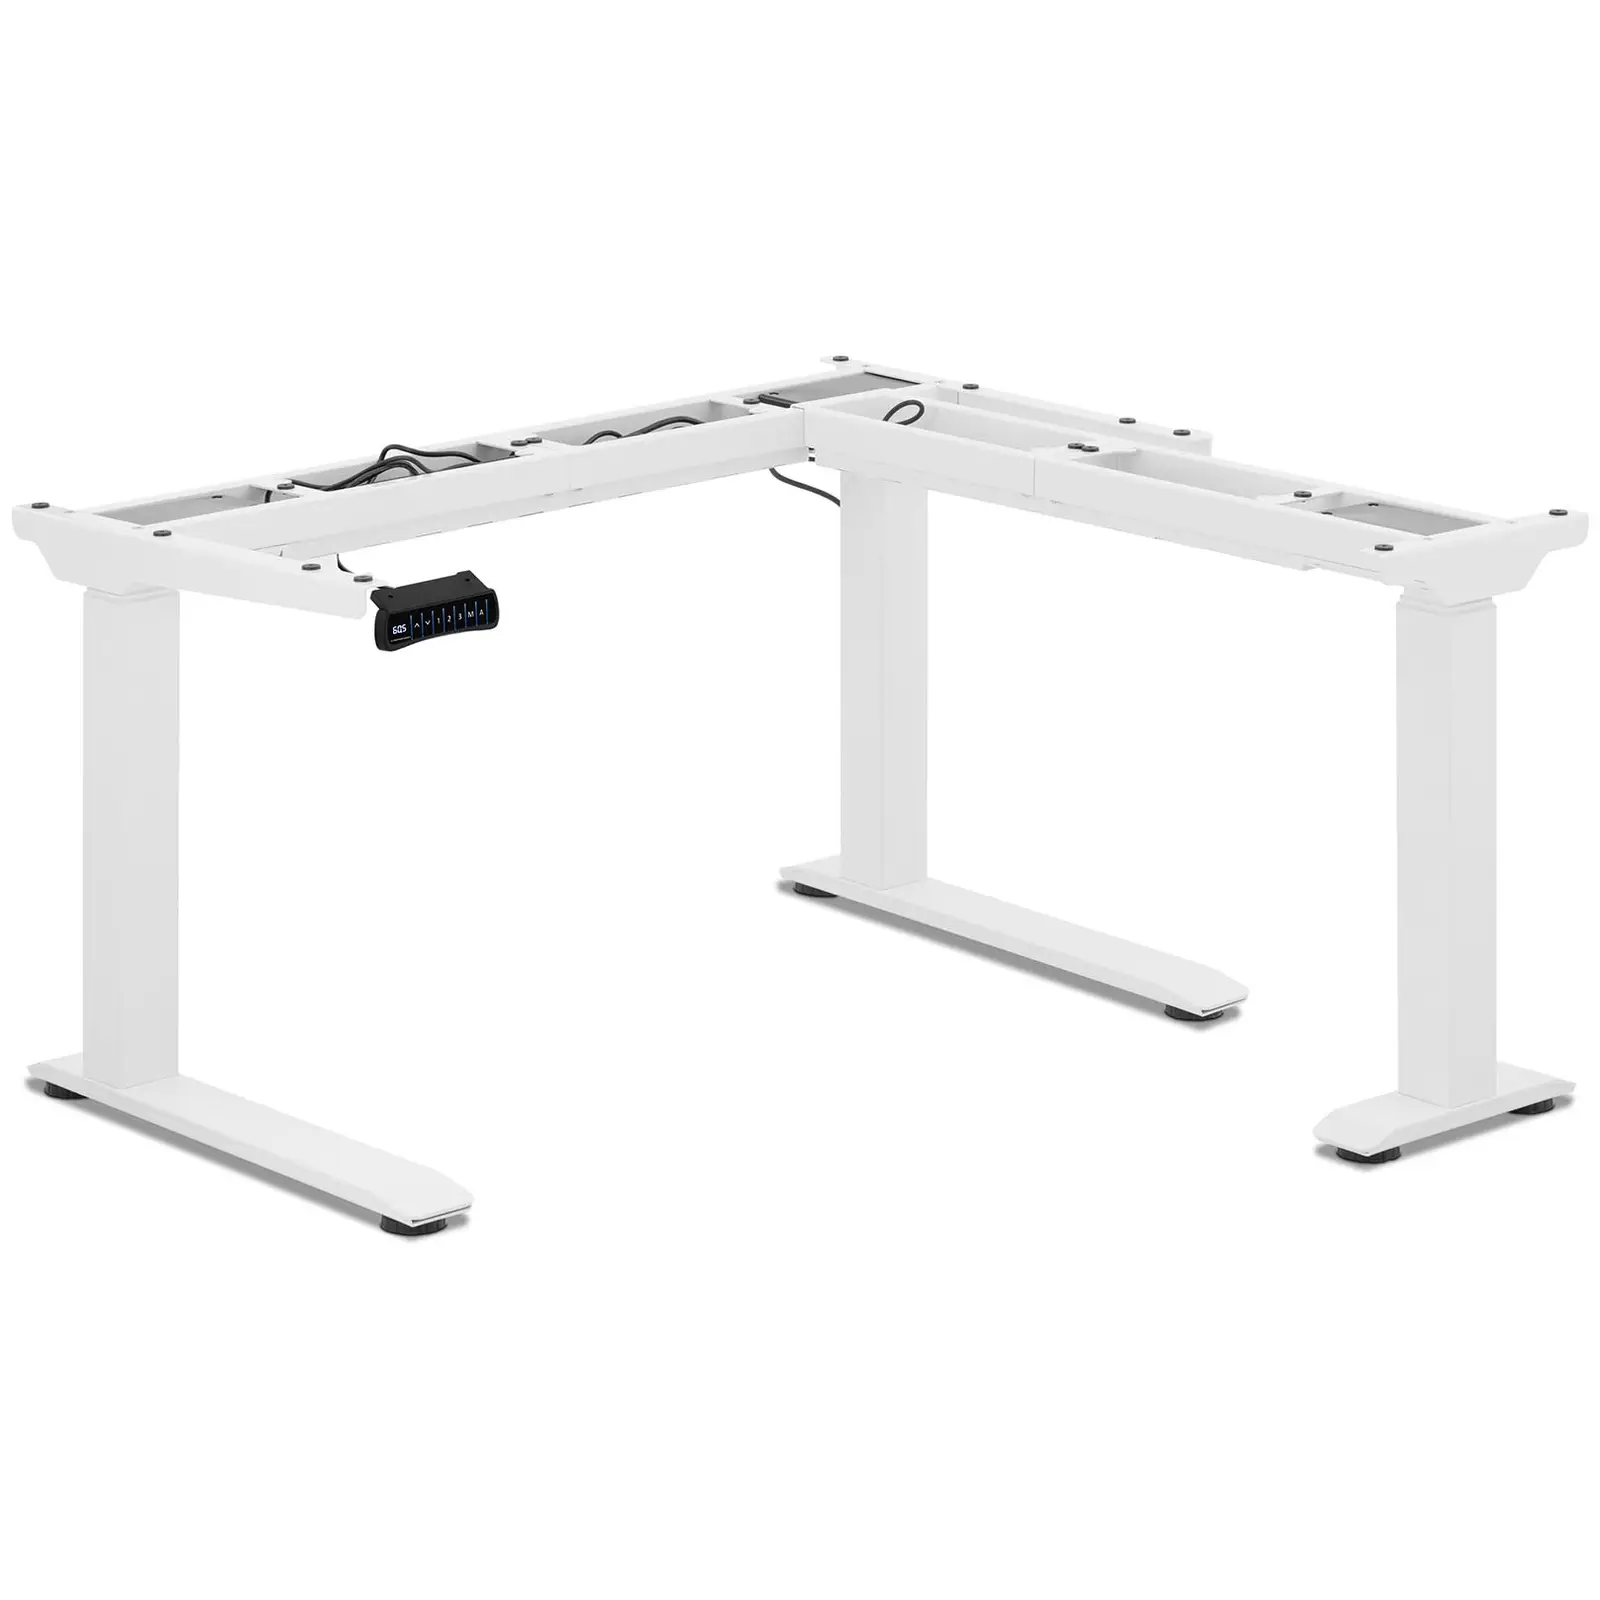 Supporto scrivania regolabile in altezza ad angolo - Altezza: 60 - 125 cm - Larghezza: 110 - 190 cm (sinistra) / 90 - 150 cm (destra)